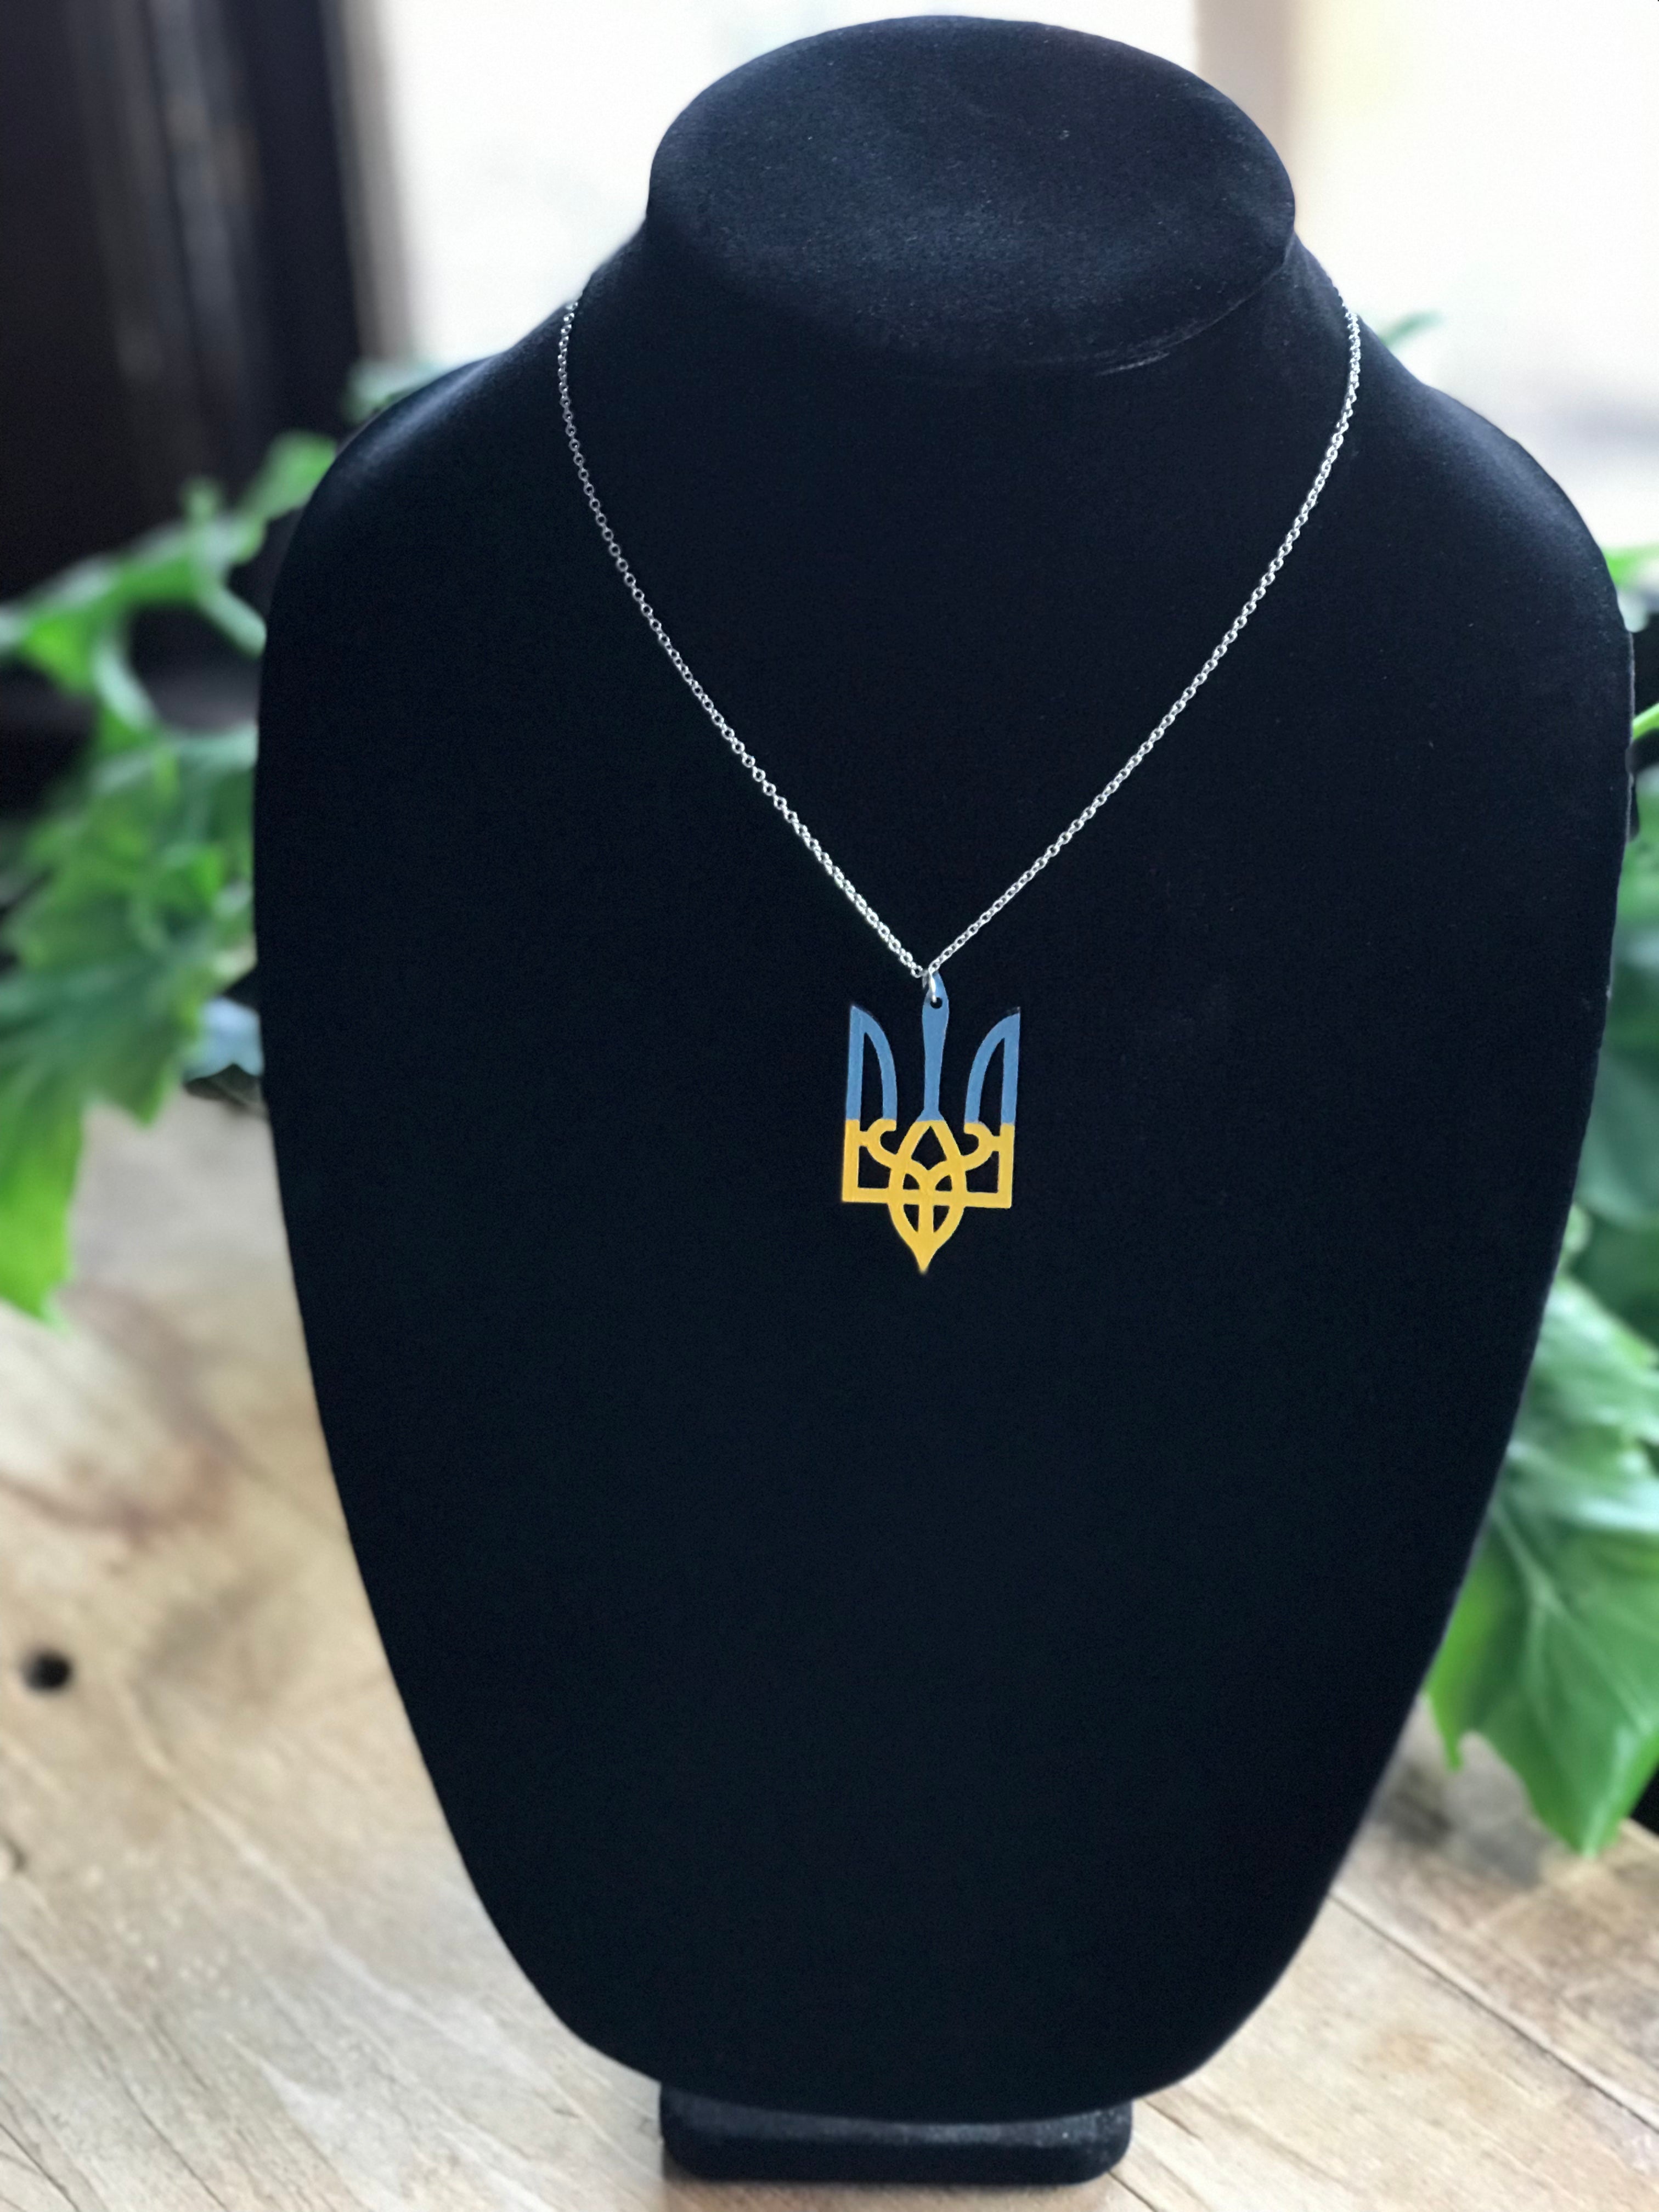 Bestseller - Support Ukraine Trident Necklace